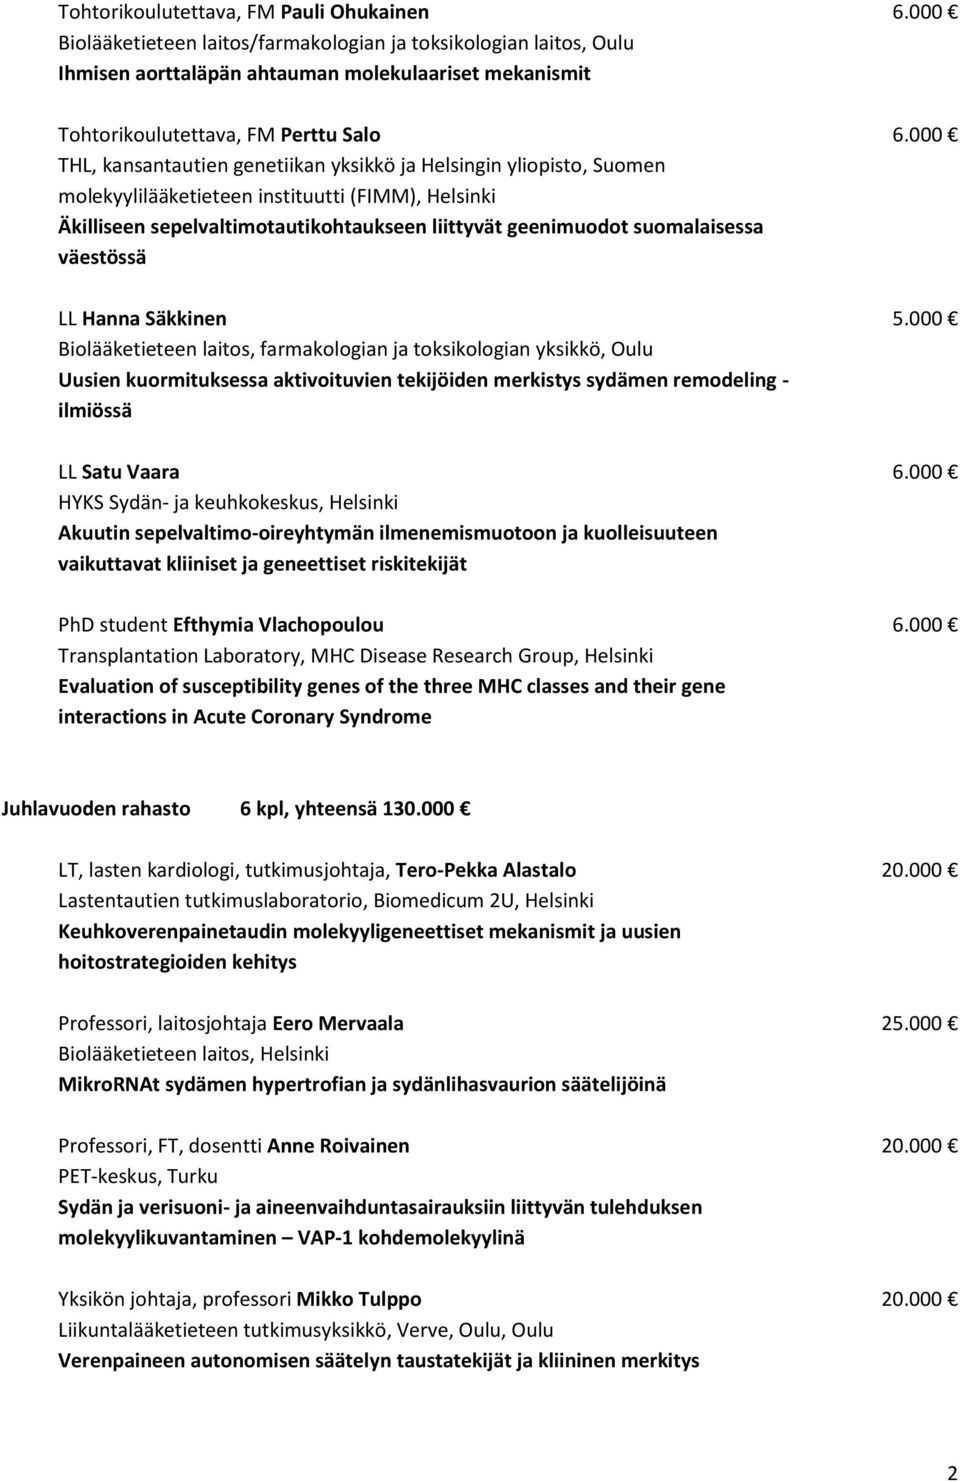 000 THL, kansantautien genetiikan yksikkö ja Helsingin yliopisto, Suomen molekyylilääketieteen instituutti (FIMM), Helsinki Äkilliseen sepelvaltimotautikohtaukseen liittyvät geenimuodot suomalaisessa